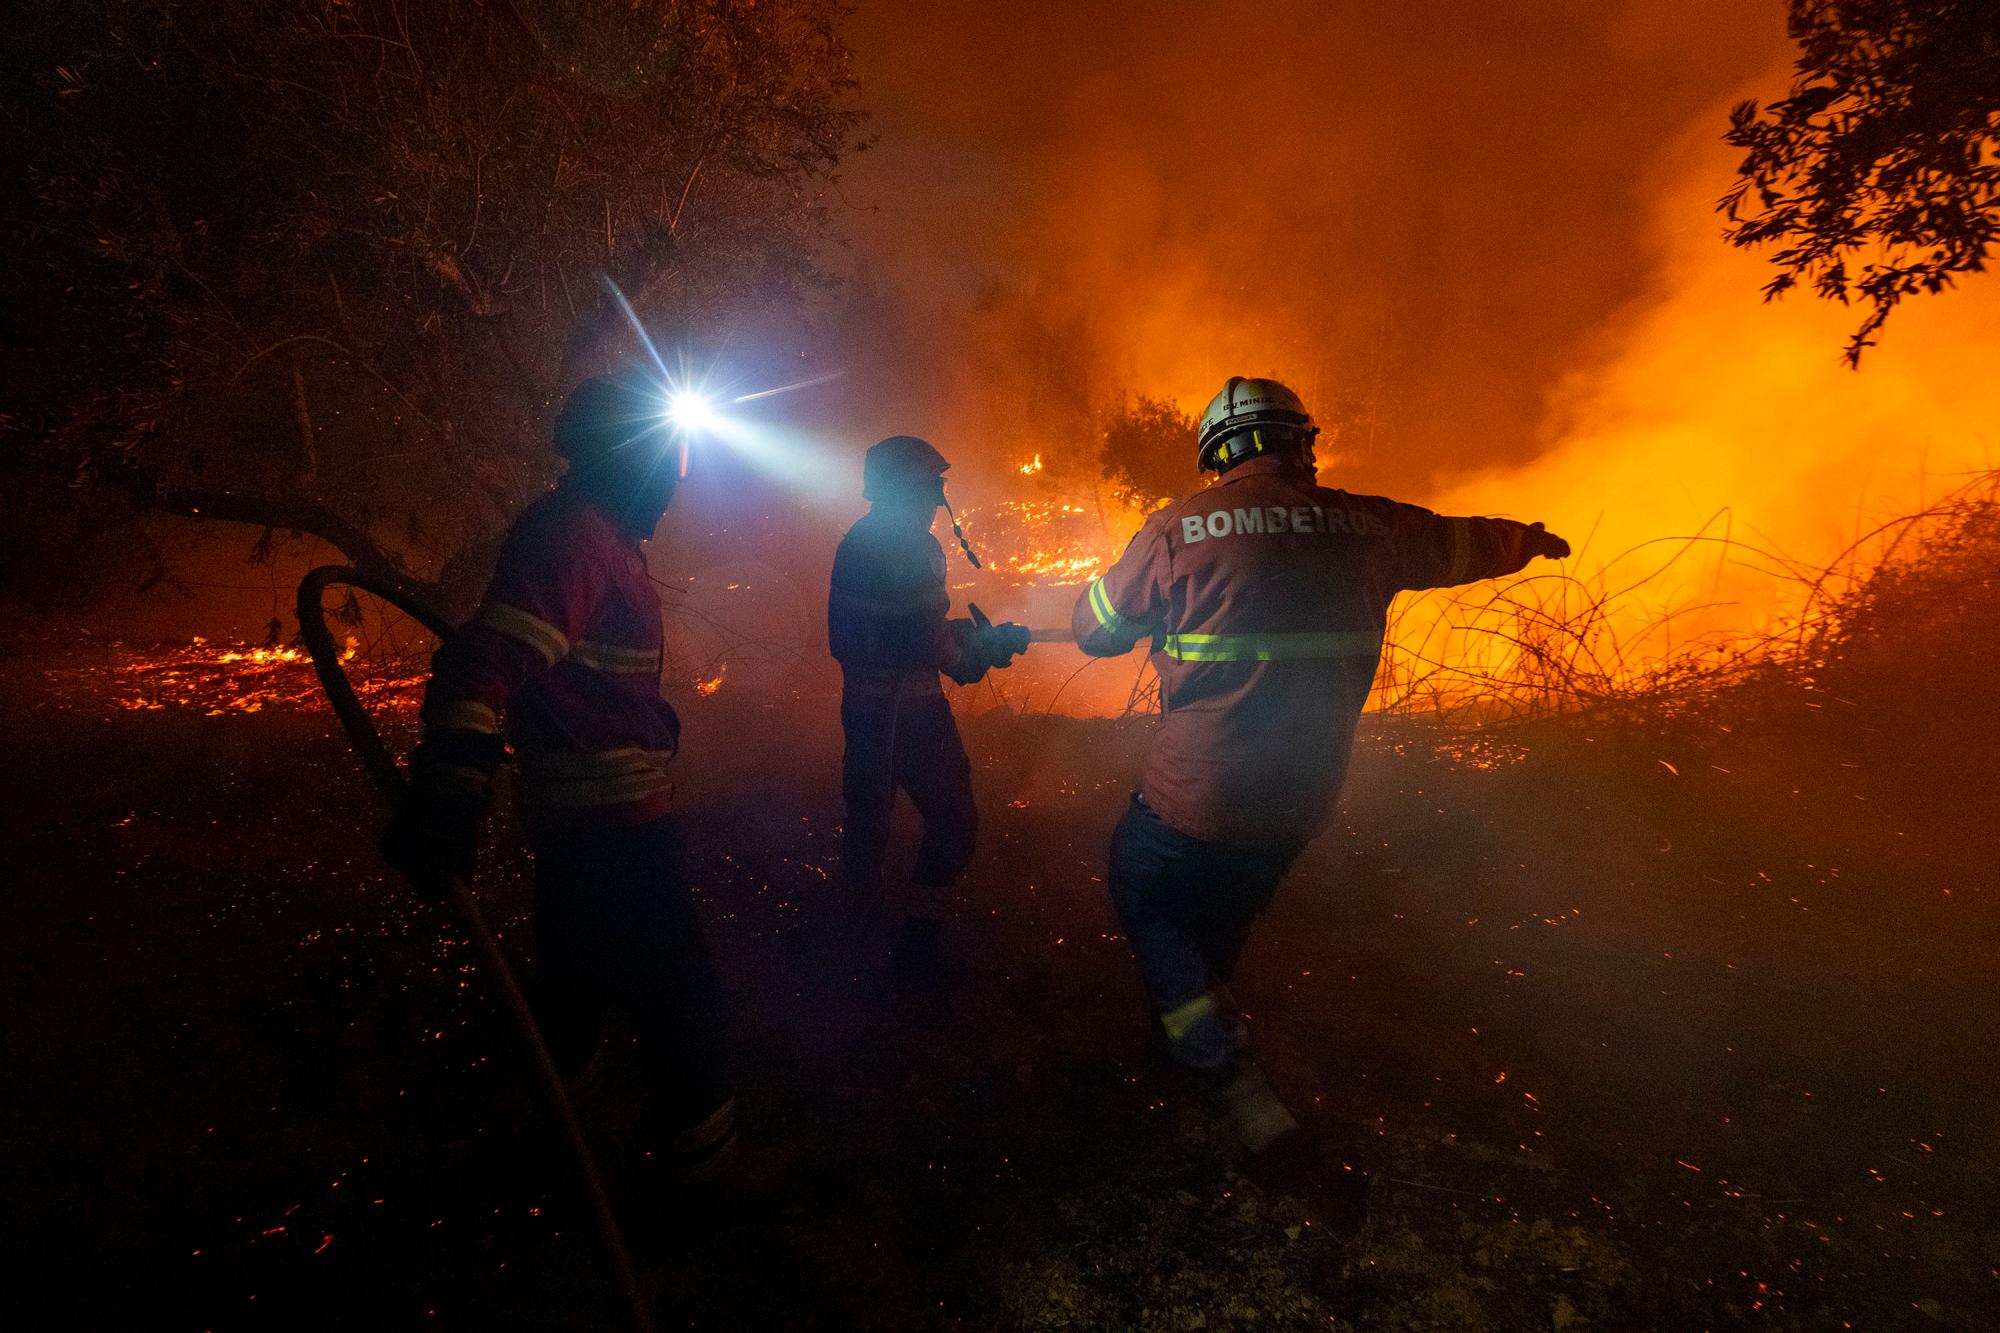 Los bomberos intentan apagar un incendio forestal cerca de la aldea de Cardigos, en el centro de Portugal, el domingo 21 de julio de 2019. Unos 1.800 bomberos luchaban por contener los incendios en el centro de Portugal que ya han herido a personas, incluidos varios bomberos, dijeron las autoridades el domingo.